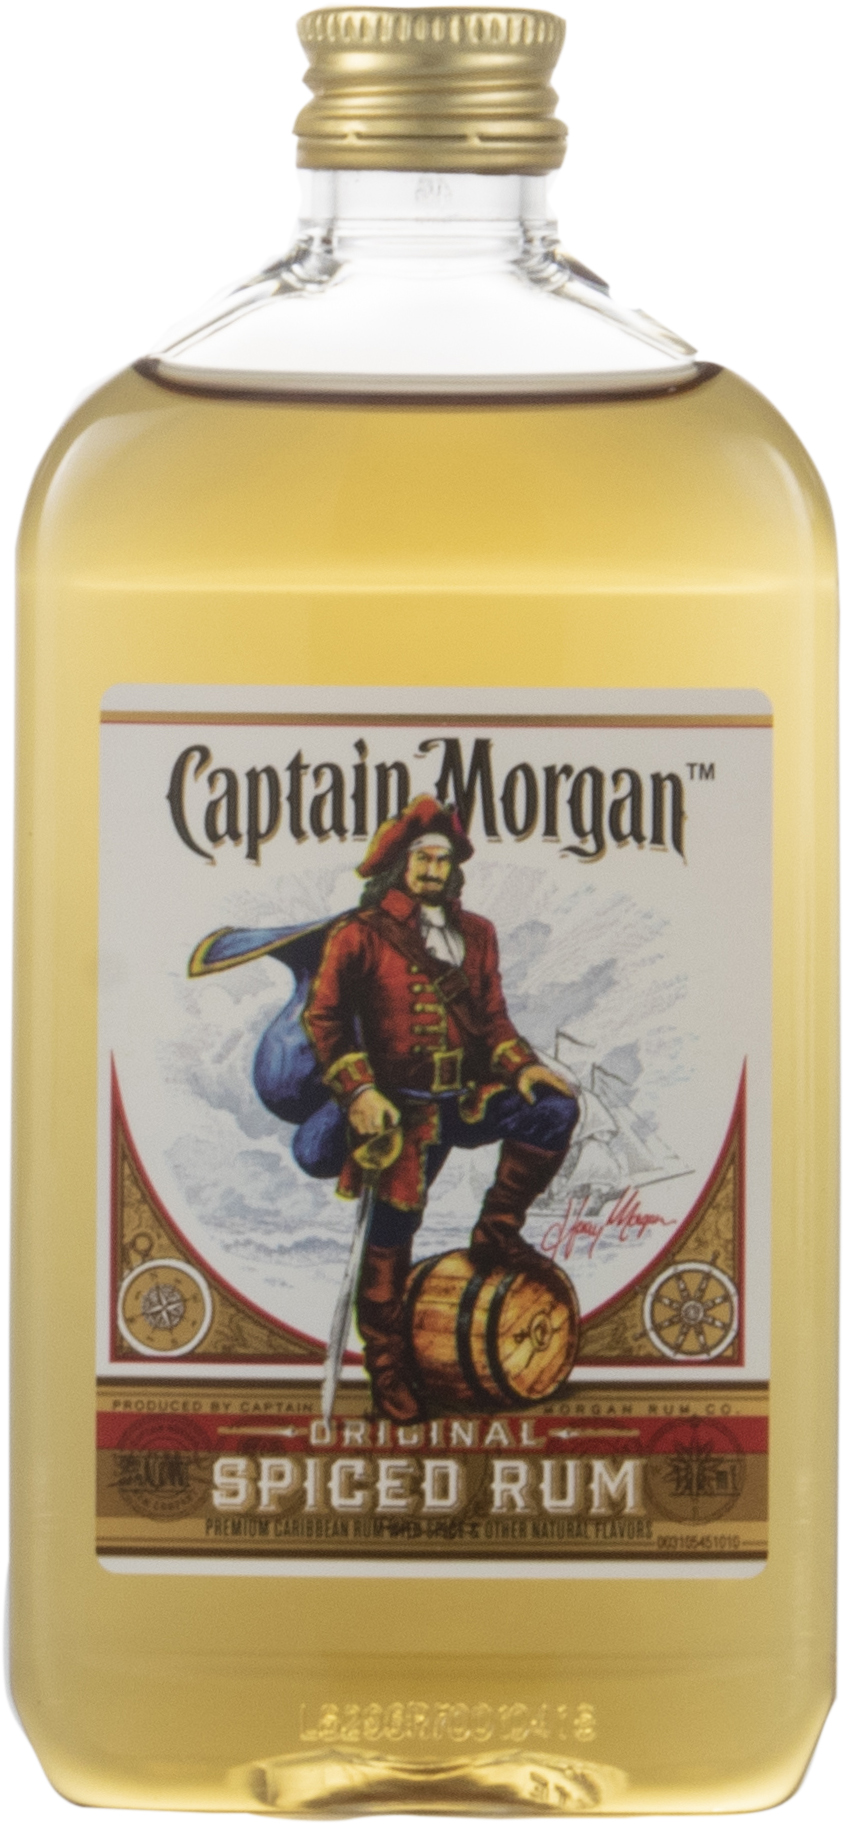 Captain Morgan Sliced Apple Spiced Rum with Football Ice Mold